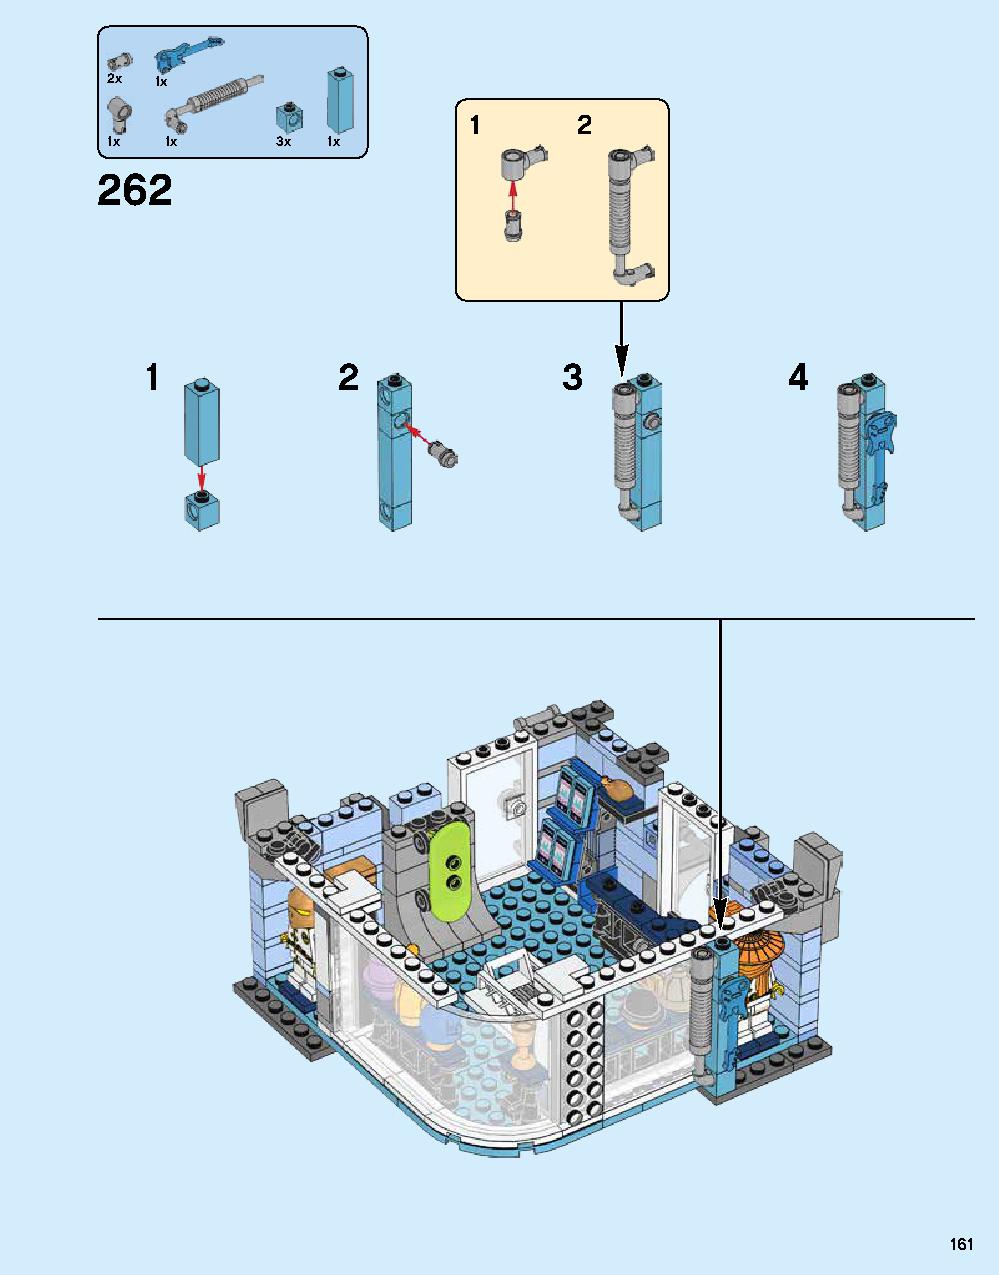 ニンジャゴー シティ 70620 レゴの商品情報 レゴの説明書・組立方法 161 page